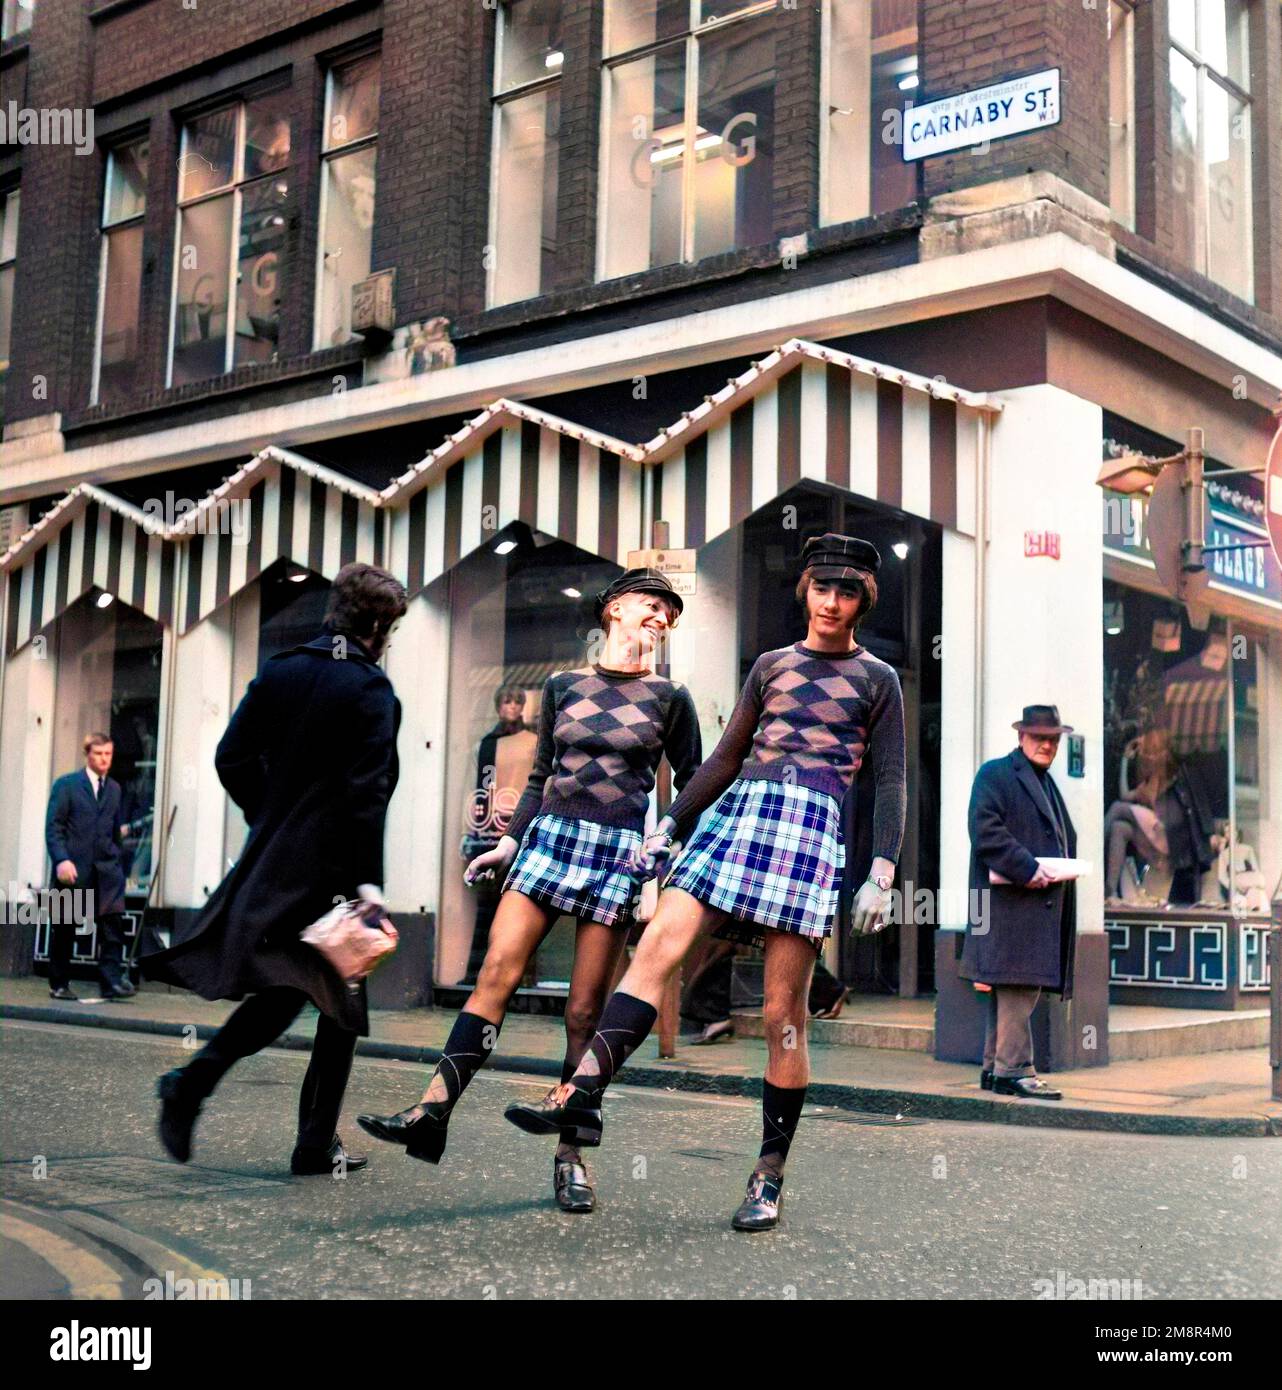 Un uomo e una donna che si posano in abiti identici di jumper e gonna nella elegante Carnaby Street, Londra 1968. Dopo la produzione colorato. Foto di Tony Henshaw Archivio Foto Stock